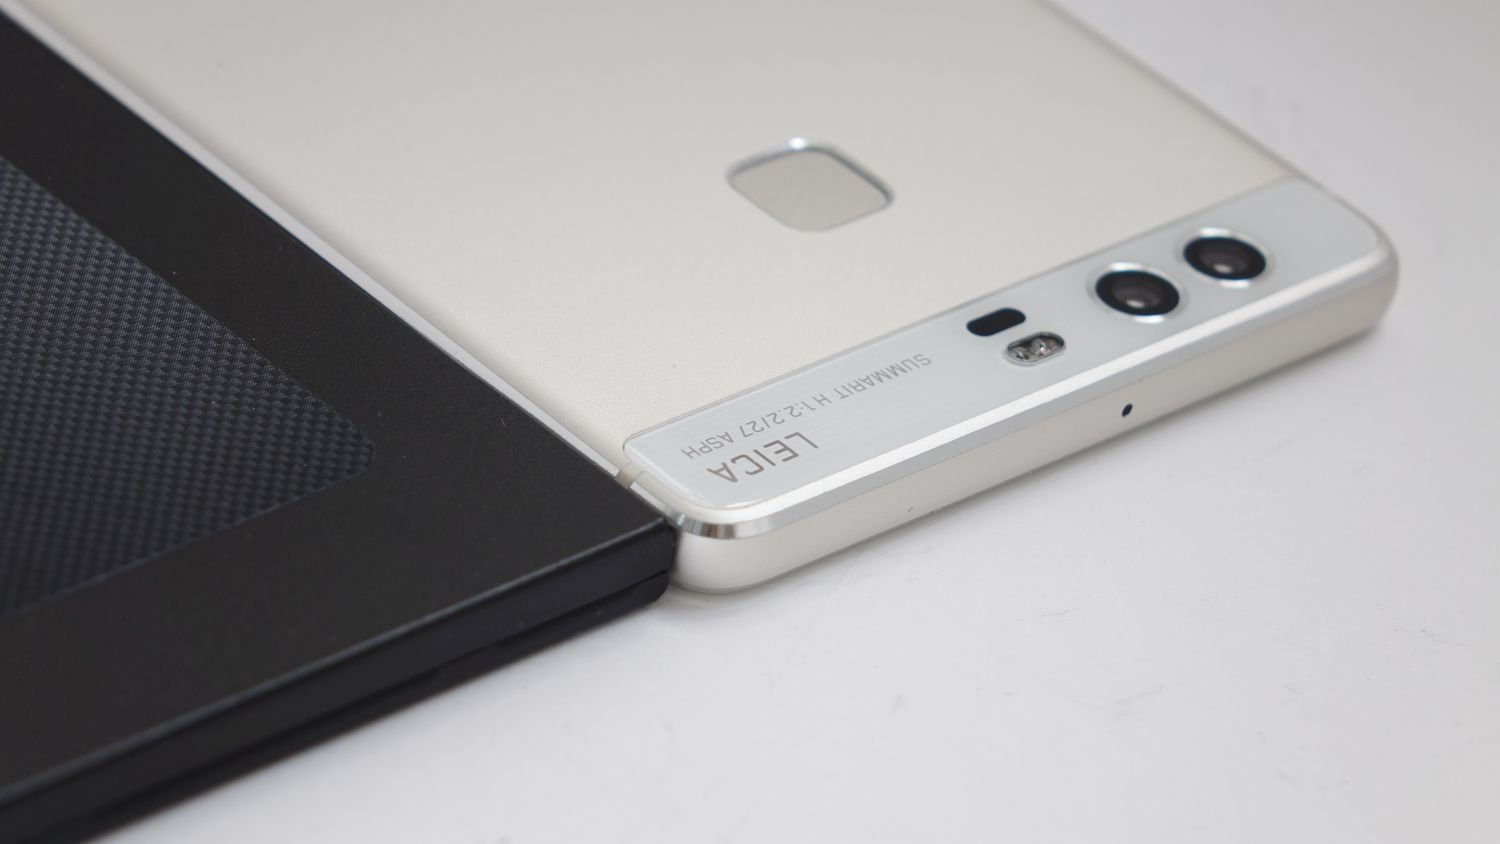 Huawei P9 thin